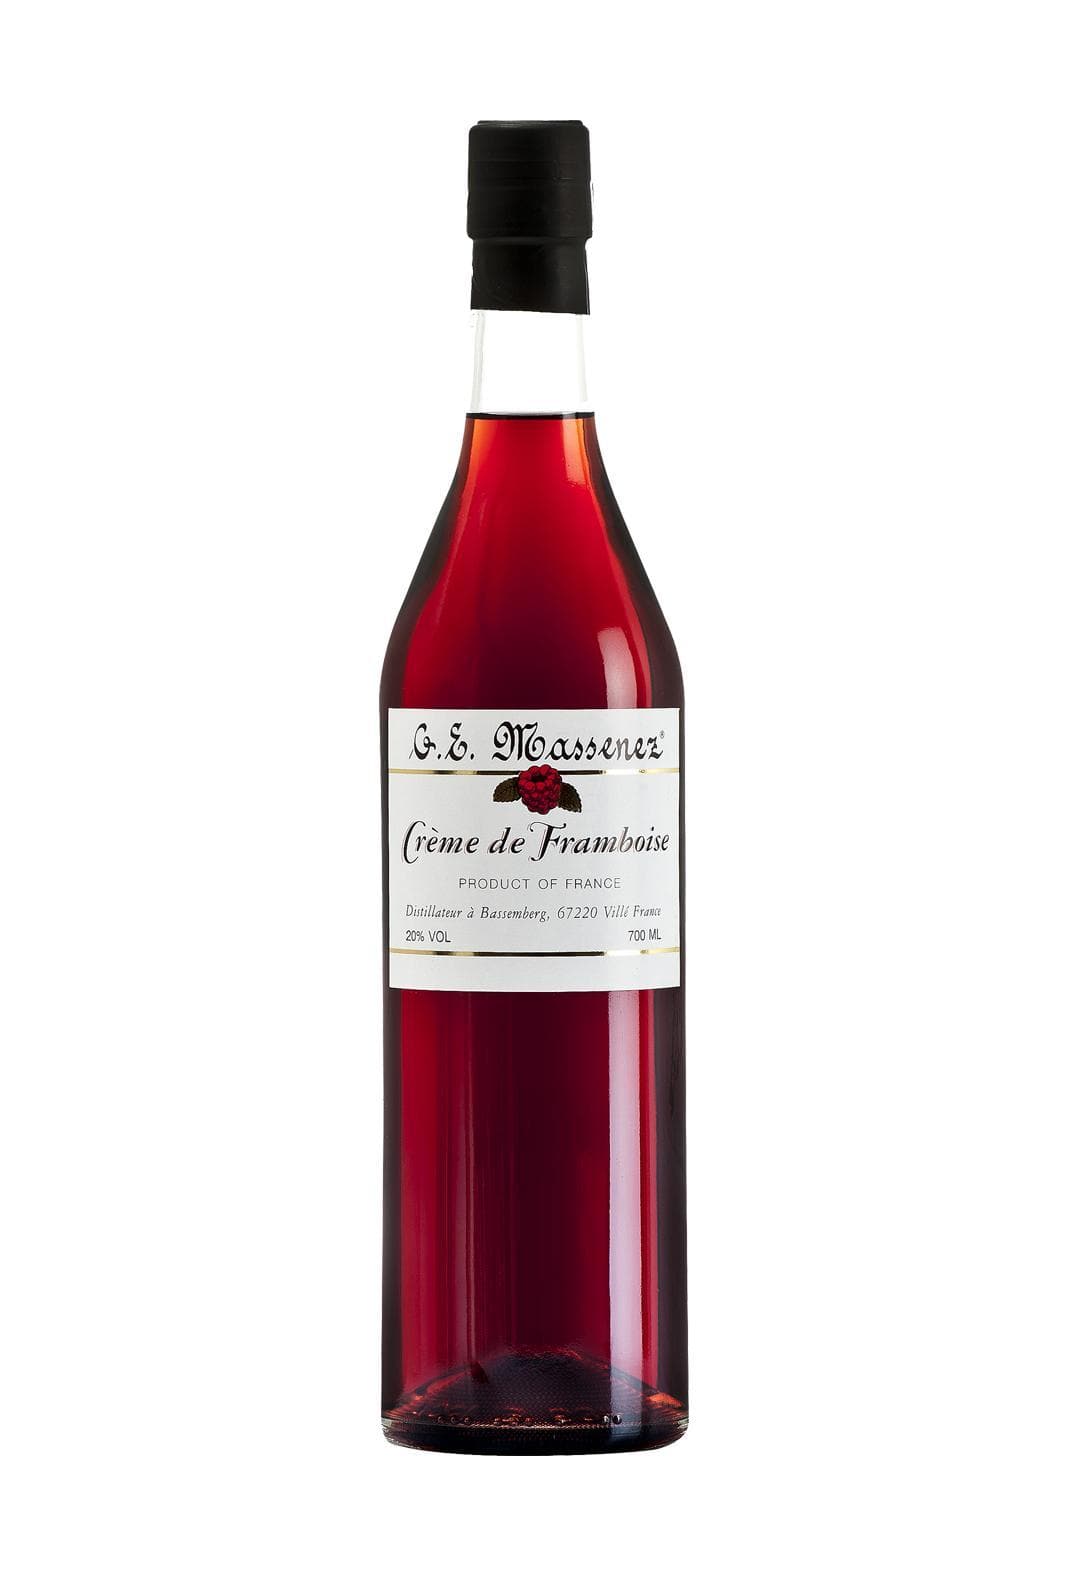 Massenez Liqueur Creme de Framboise (Raspberry) 20% 700ml | Liqueurs | Shop online at Spirits of France